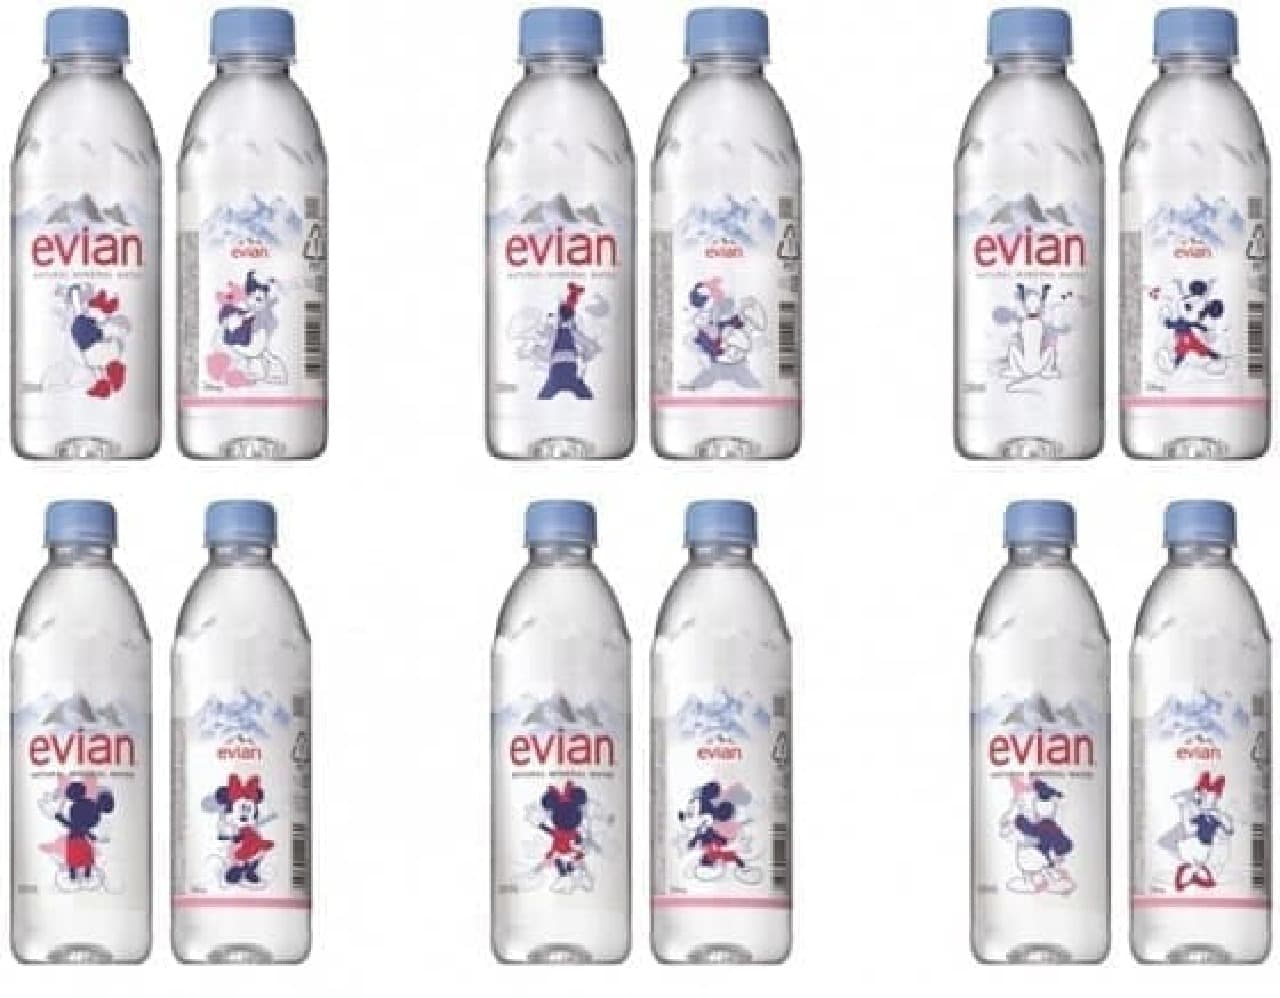 エビアン ディズニーデザインボトル がステキ 透明なボトルを活かしたシースルーデザイン えん食べ